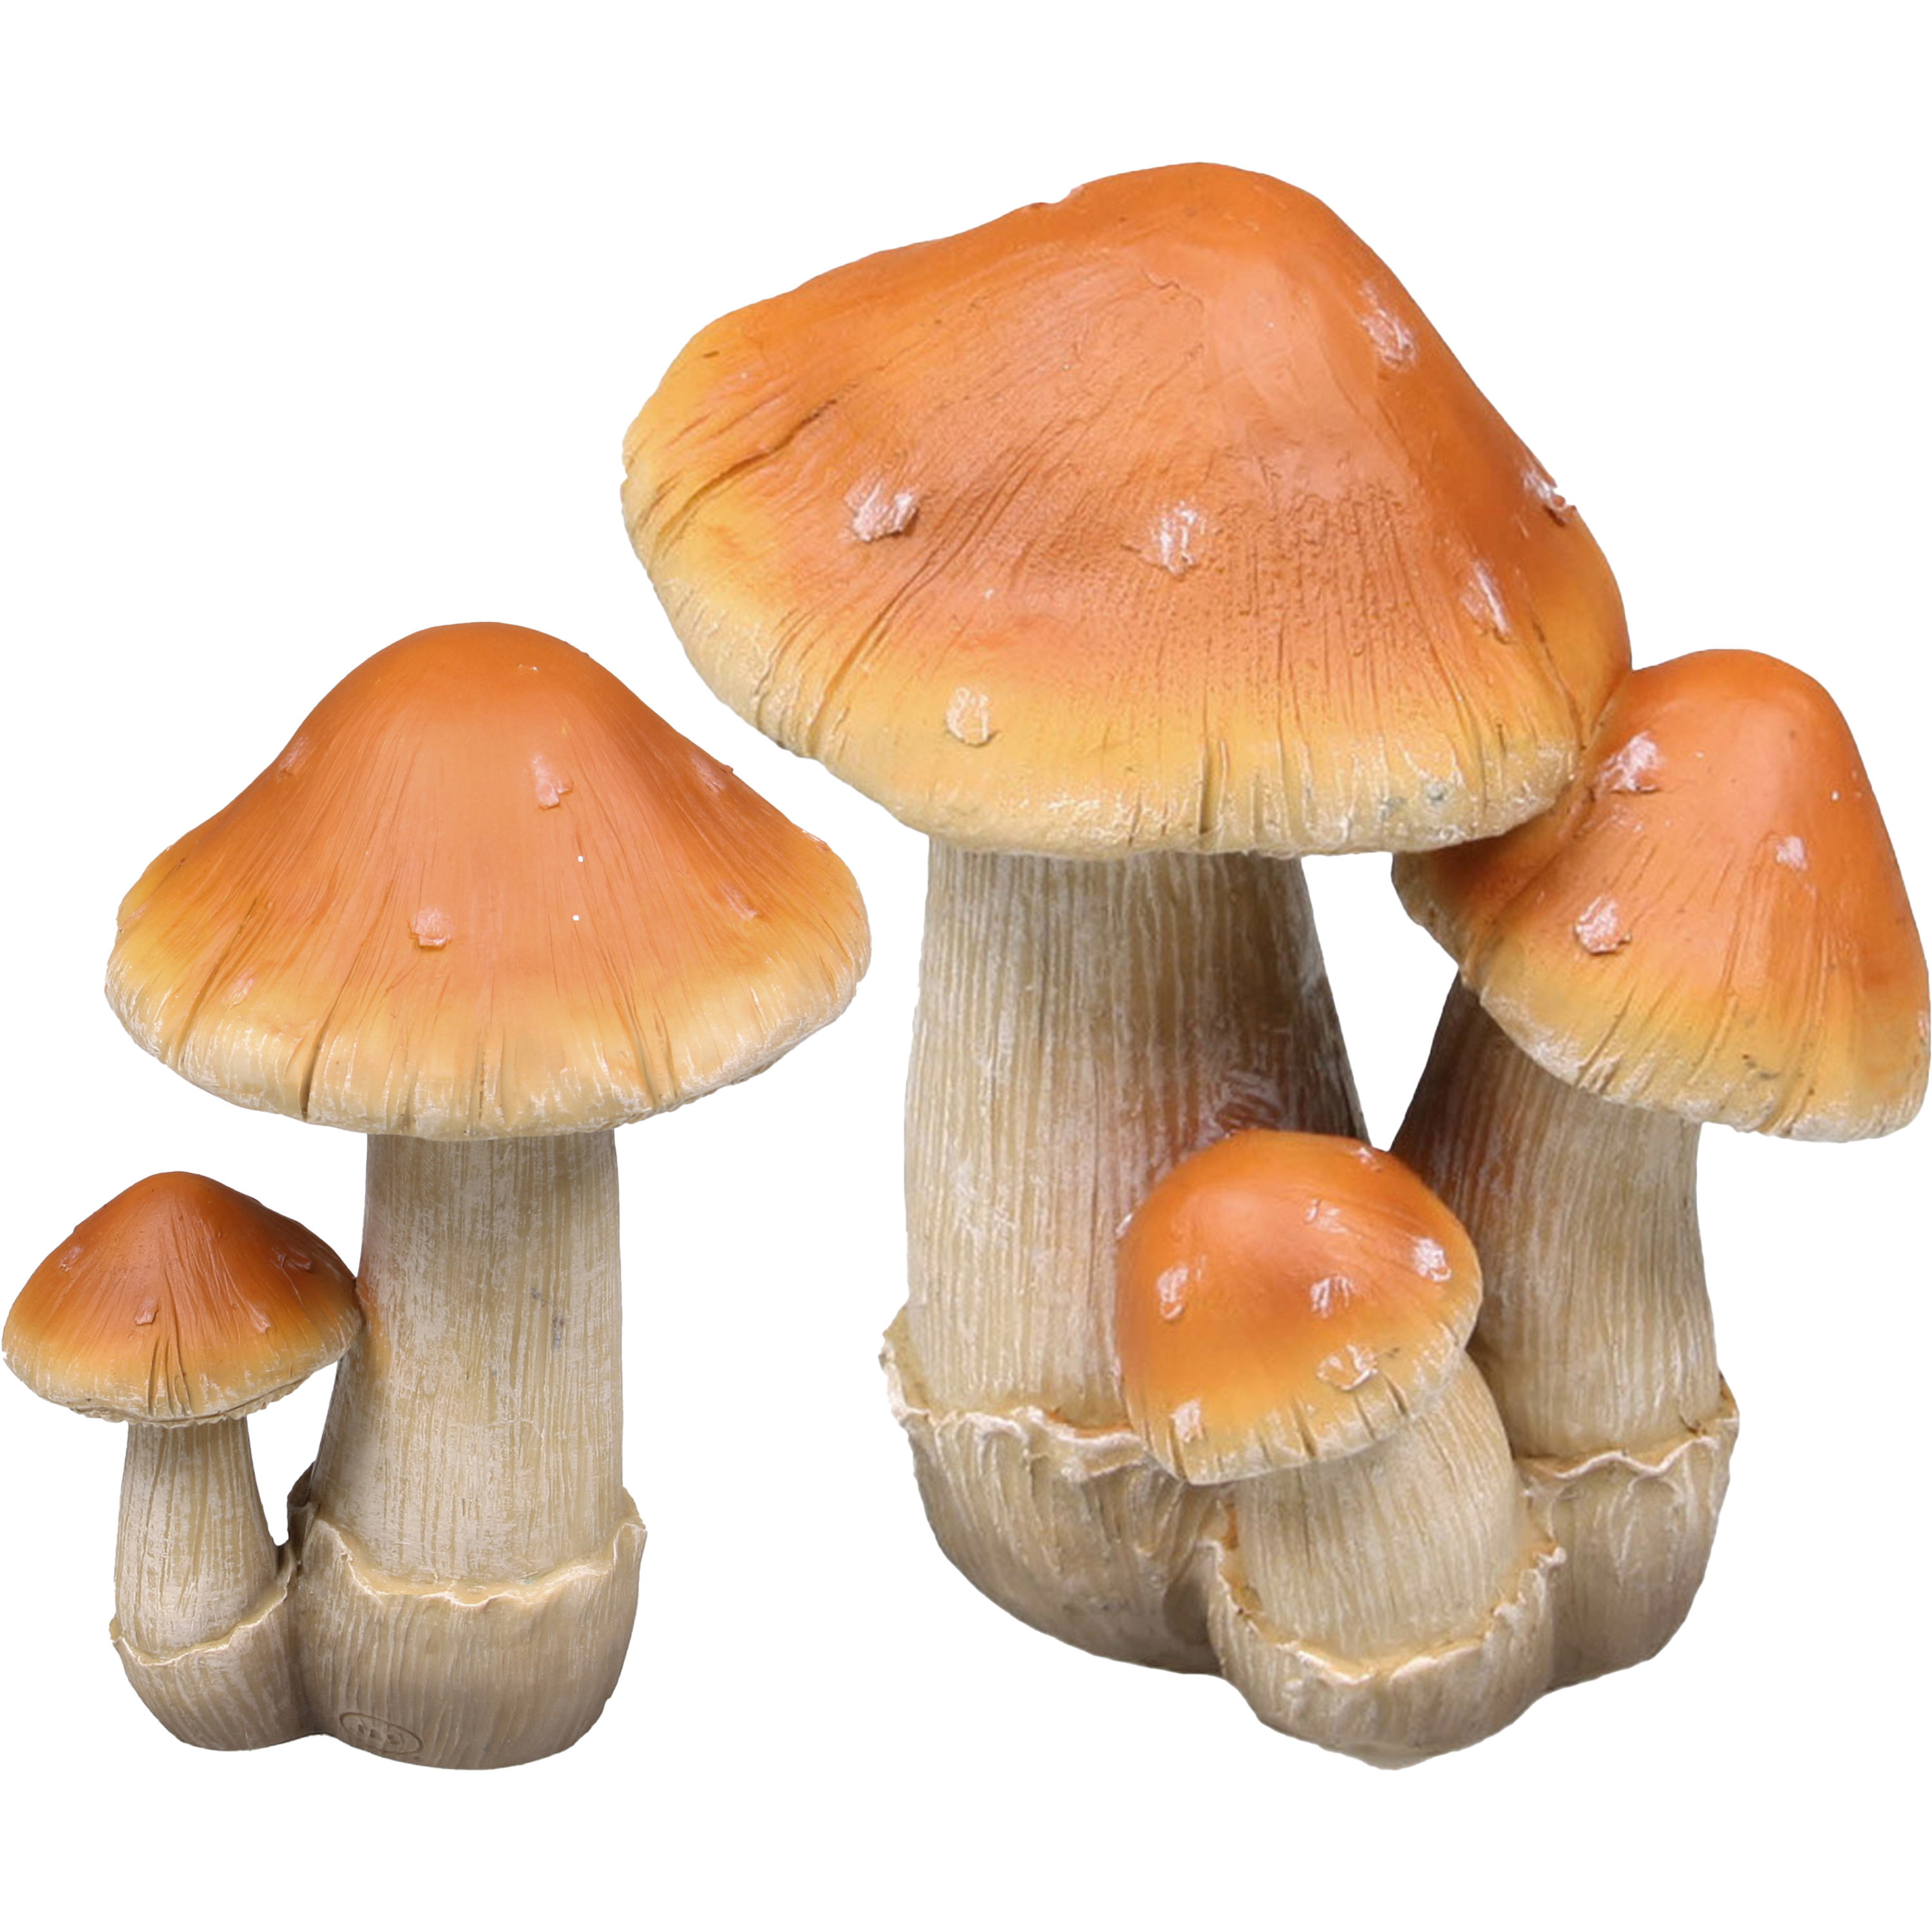 Decoratie paddenstoelen setje met 2x boleet paddenstoelen herfst thema